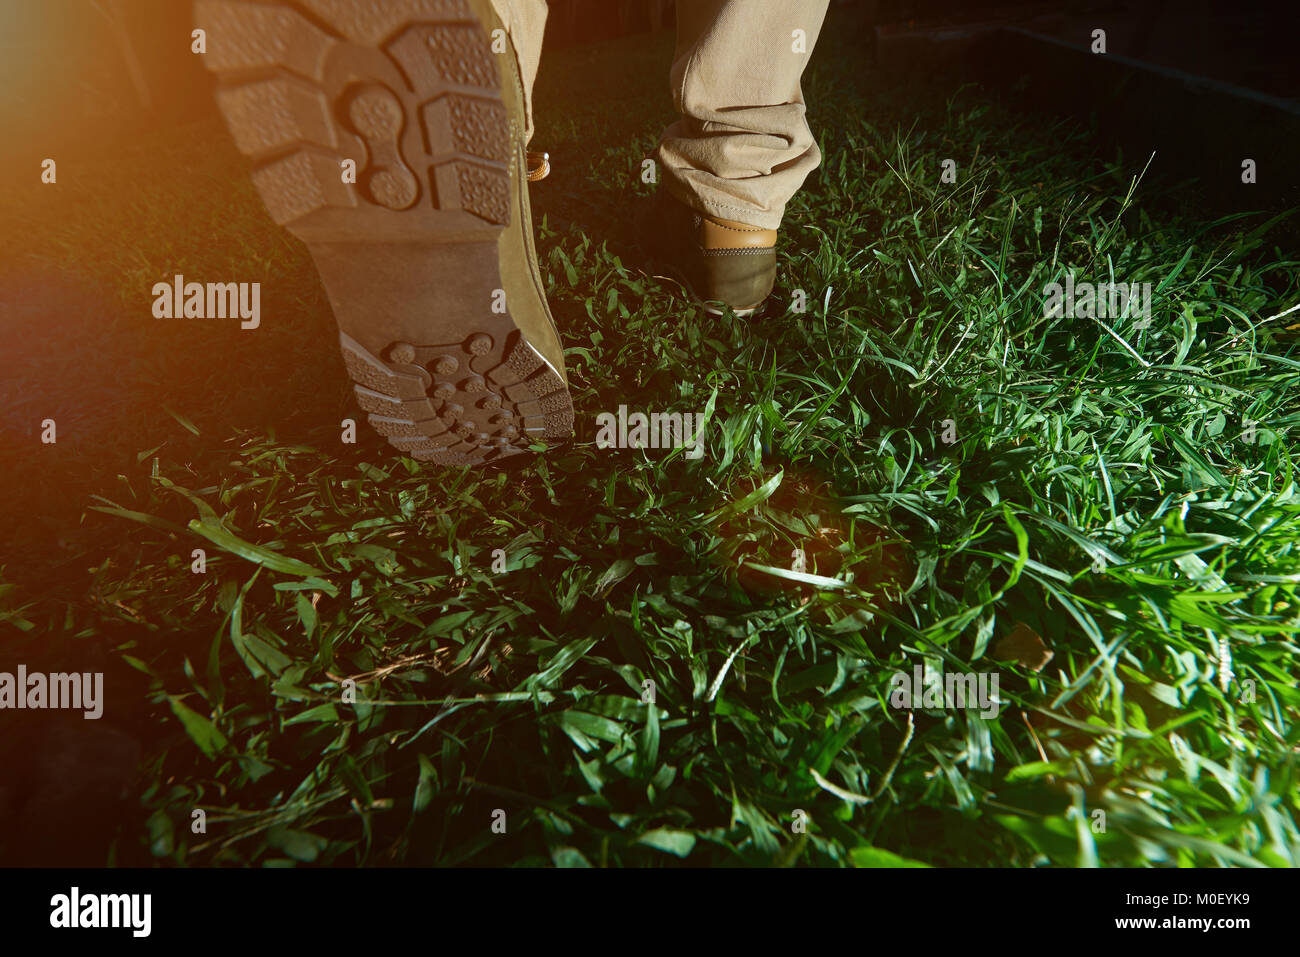 Man Walking auf grünem Gras in Wanderschuhen. Rückseite der Jagd Schuhe Stockfoto